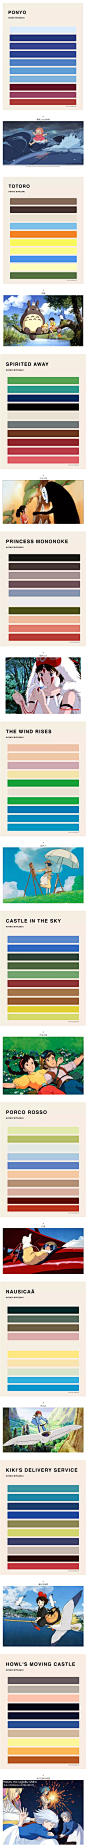 #加点灵感# 像彩虹糖一样的宫崎骏电影海报配色，很喜欢。